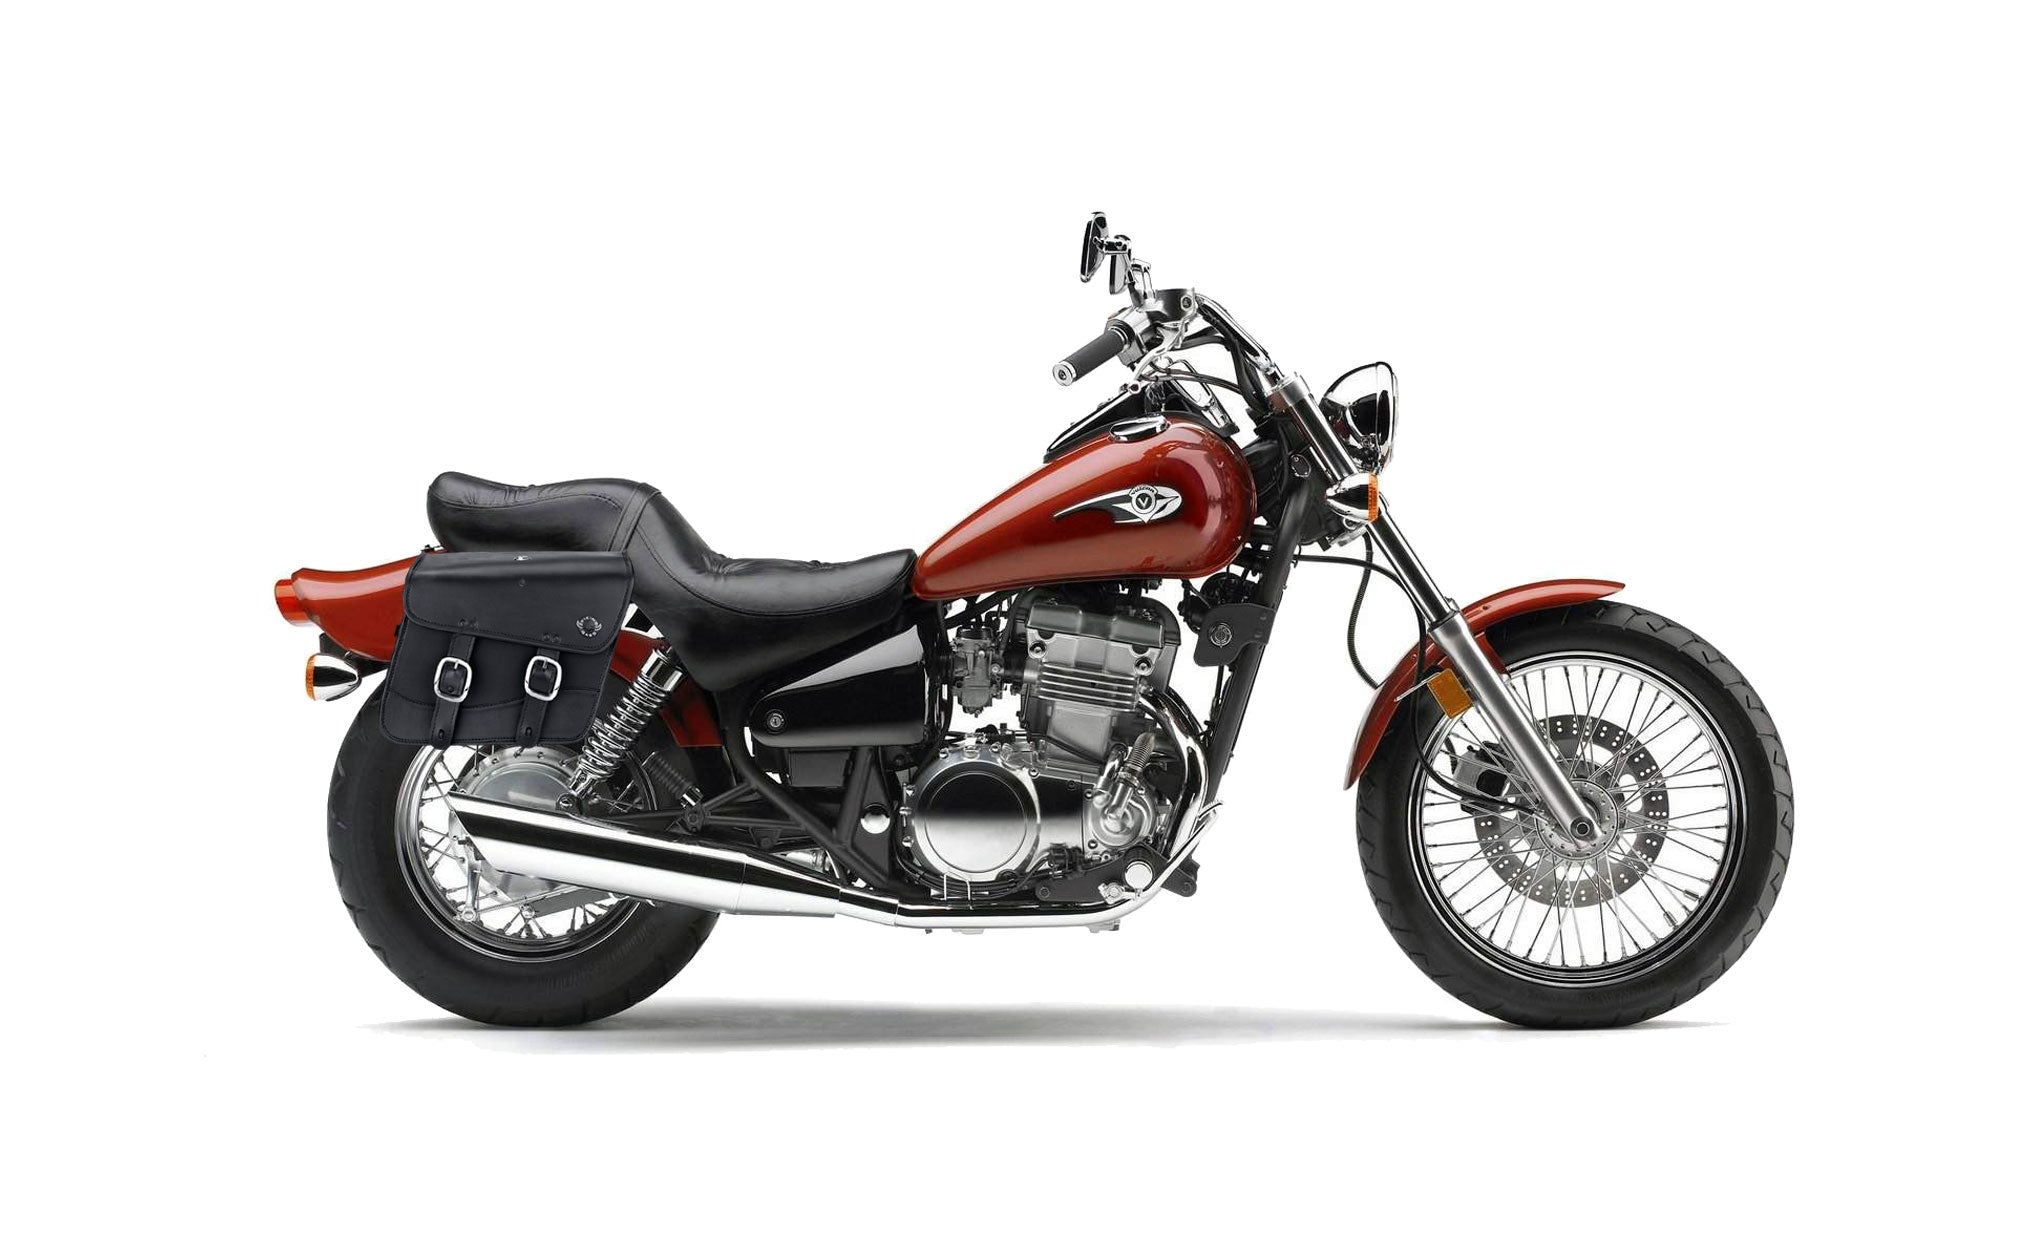 Viking Thor Medium Kawasaki Vulcan 500 En500 Leather Motorcycle Saddlebags on Bike Photo @expand